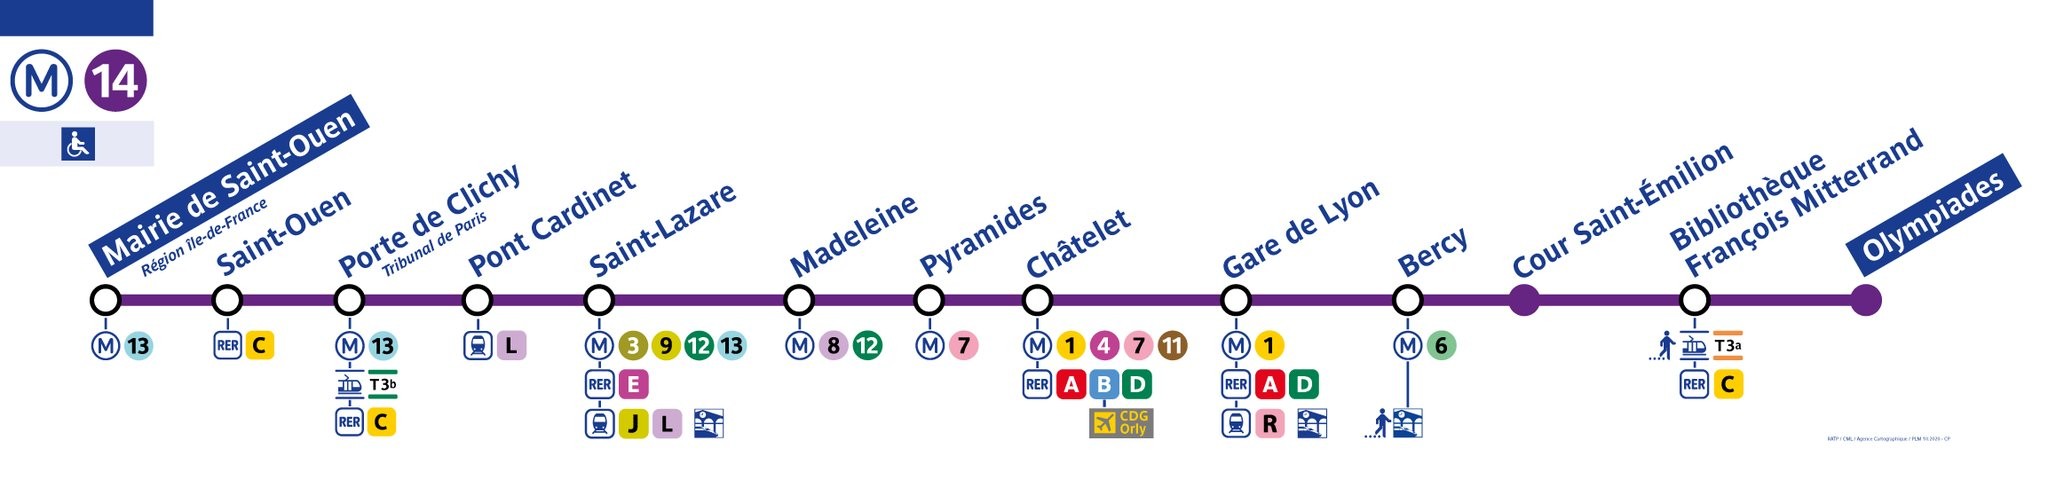 Les stations de la ligne-14 en décembre 2020.